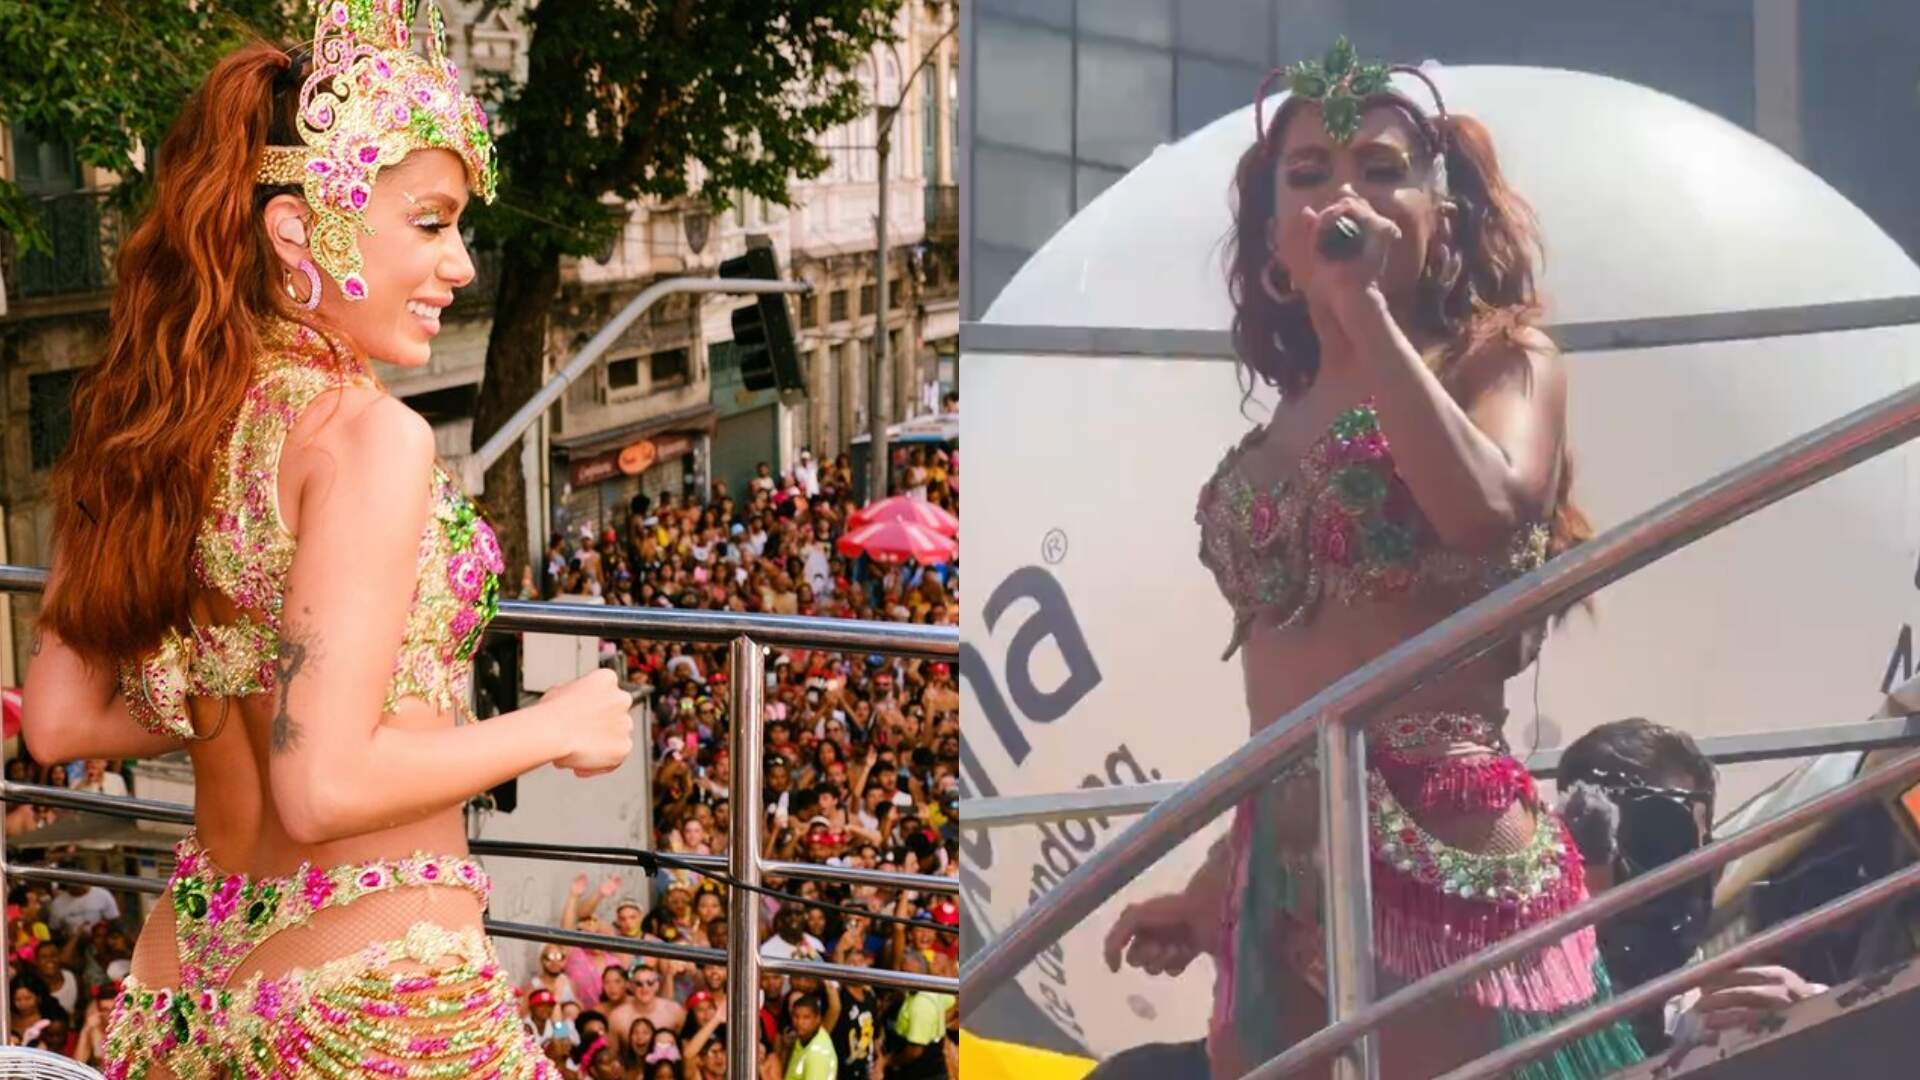 Olhos de águia! Anitta expõe ladrões durante Carnaval e viraliza na web - Metropolitana FM